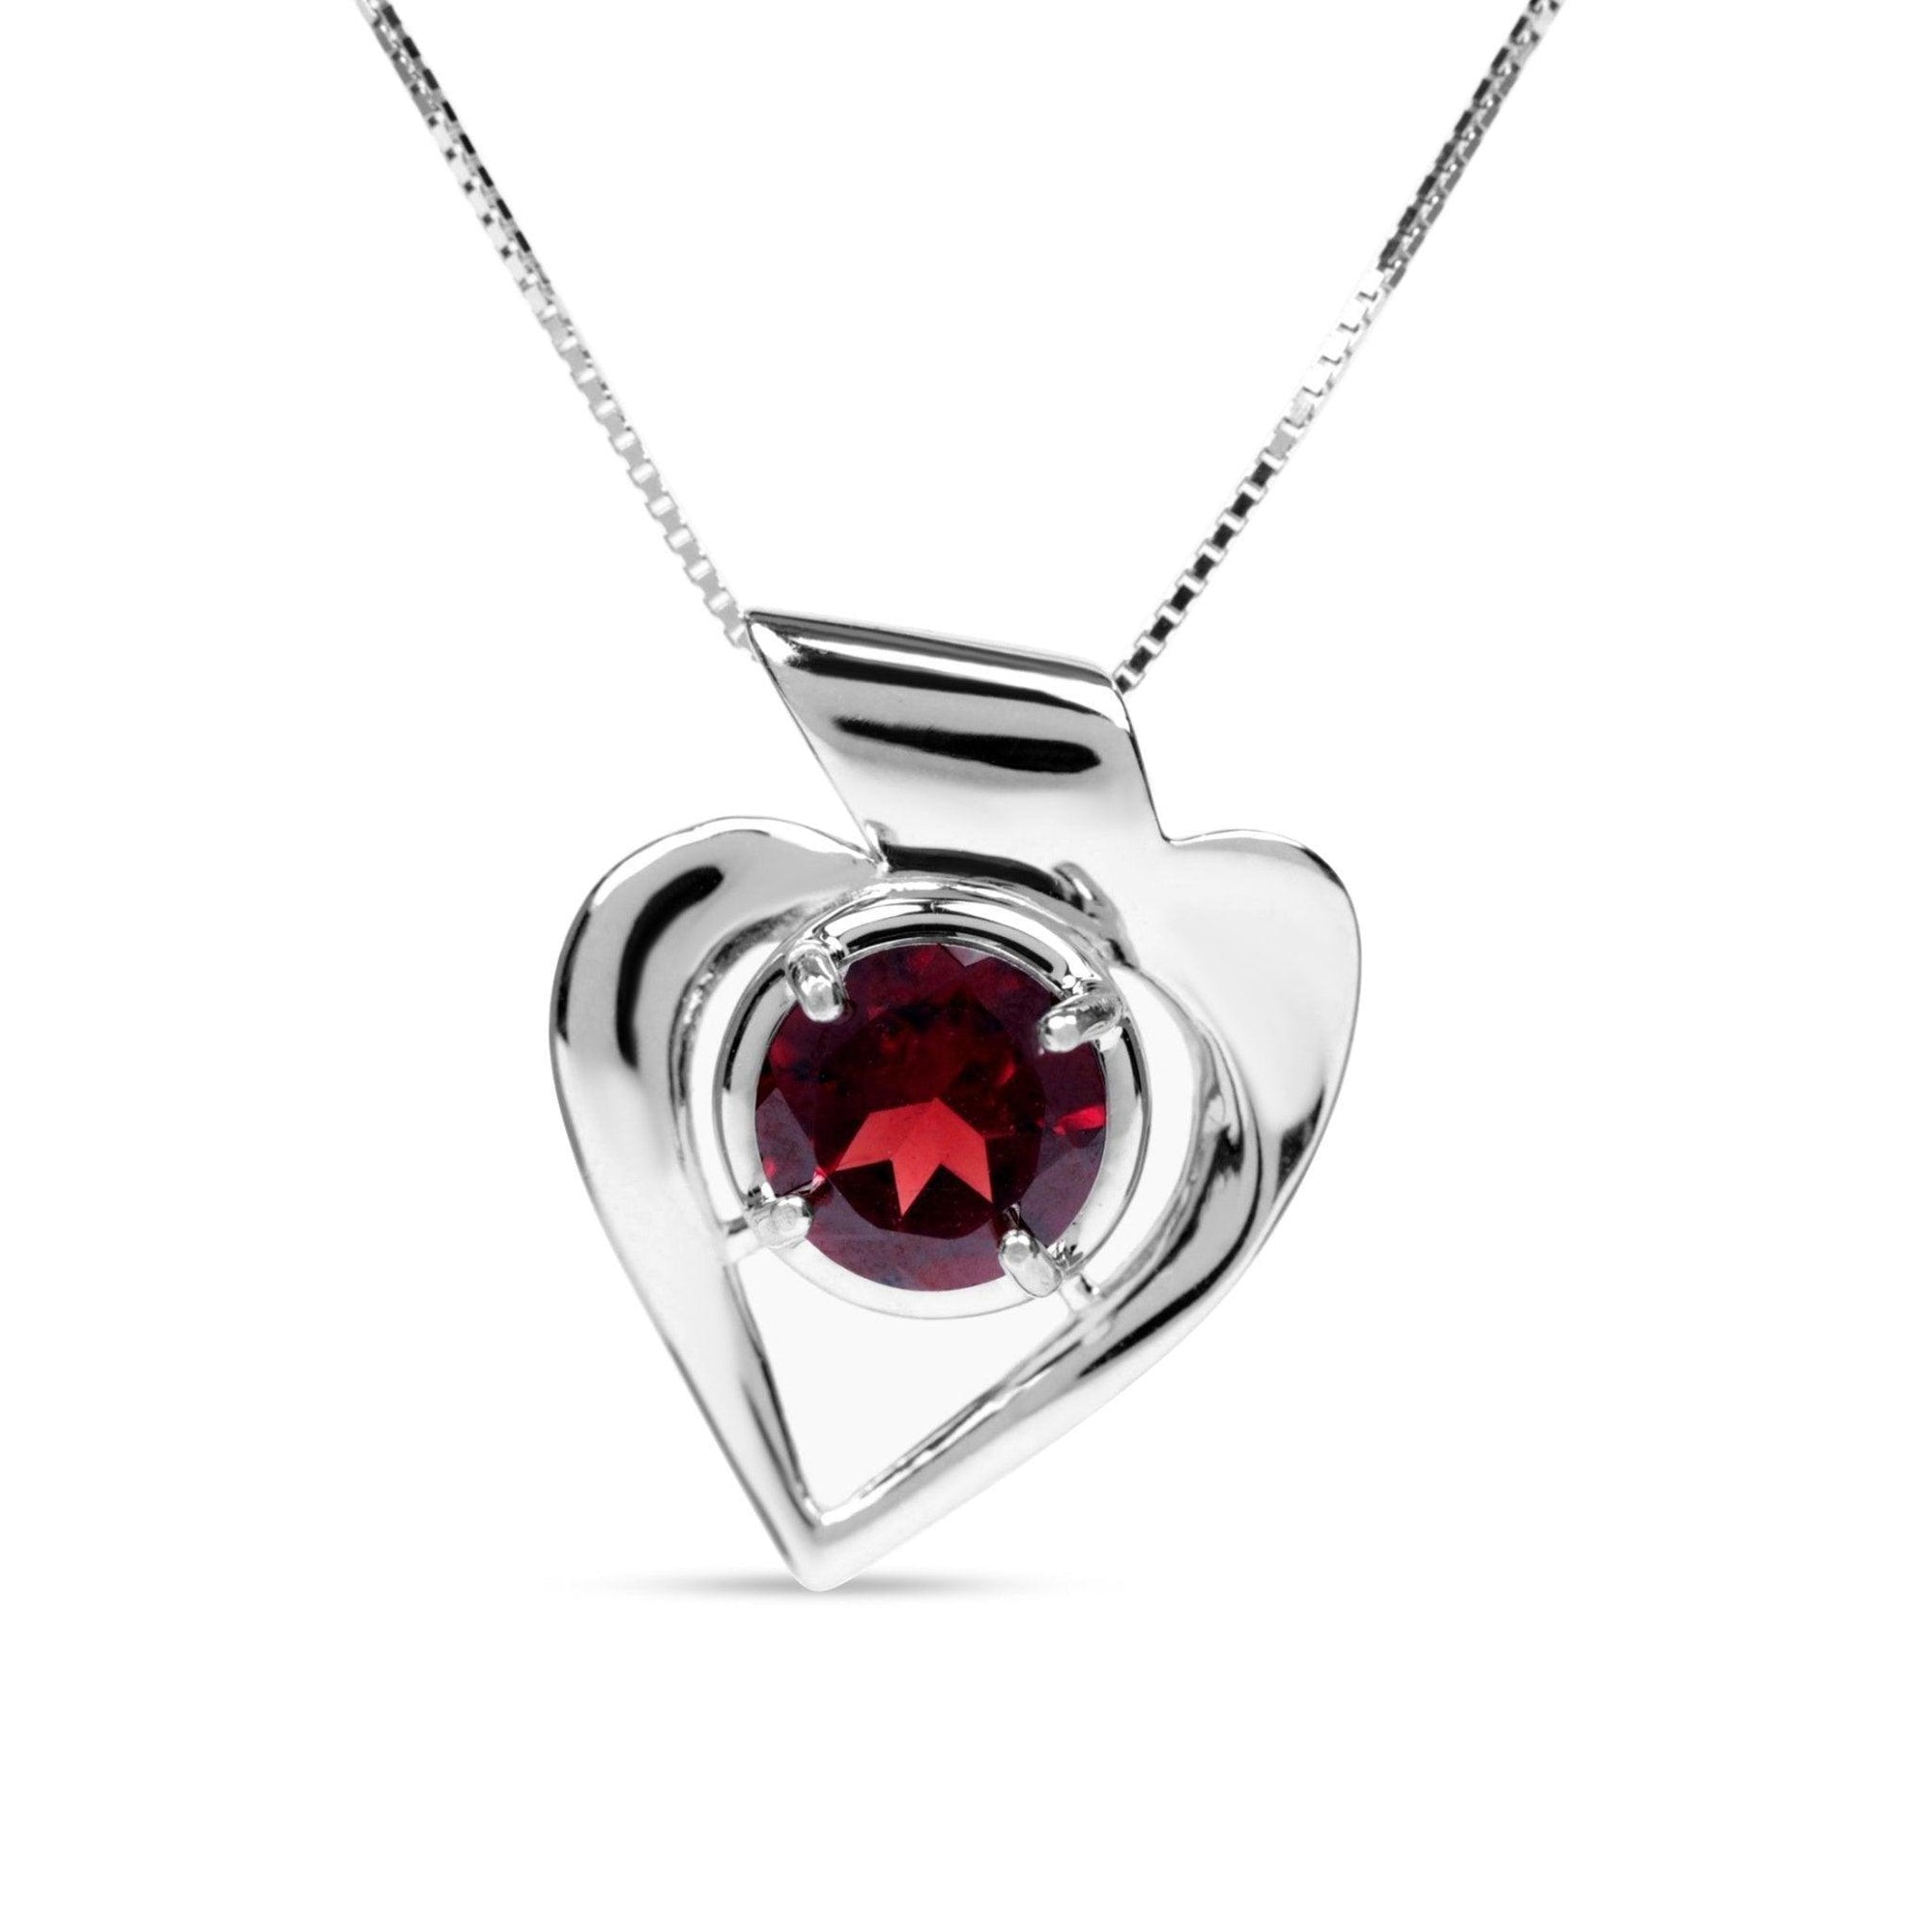 Genuine Garnet Heart Necklace - Uniquelan Jewelry